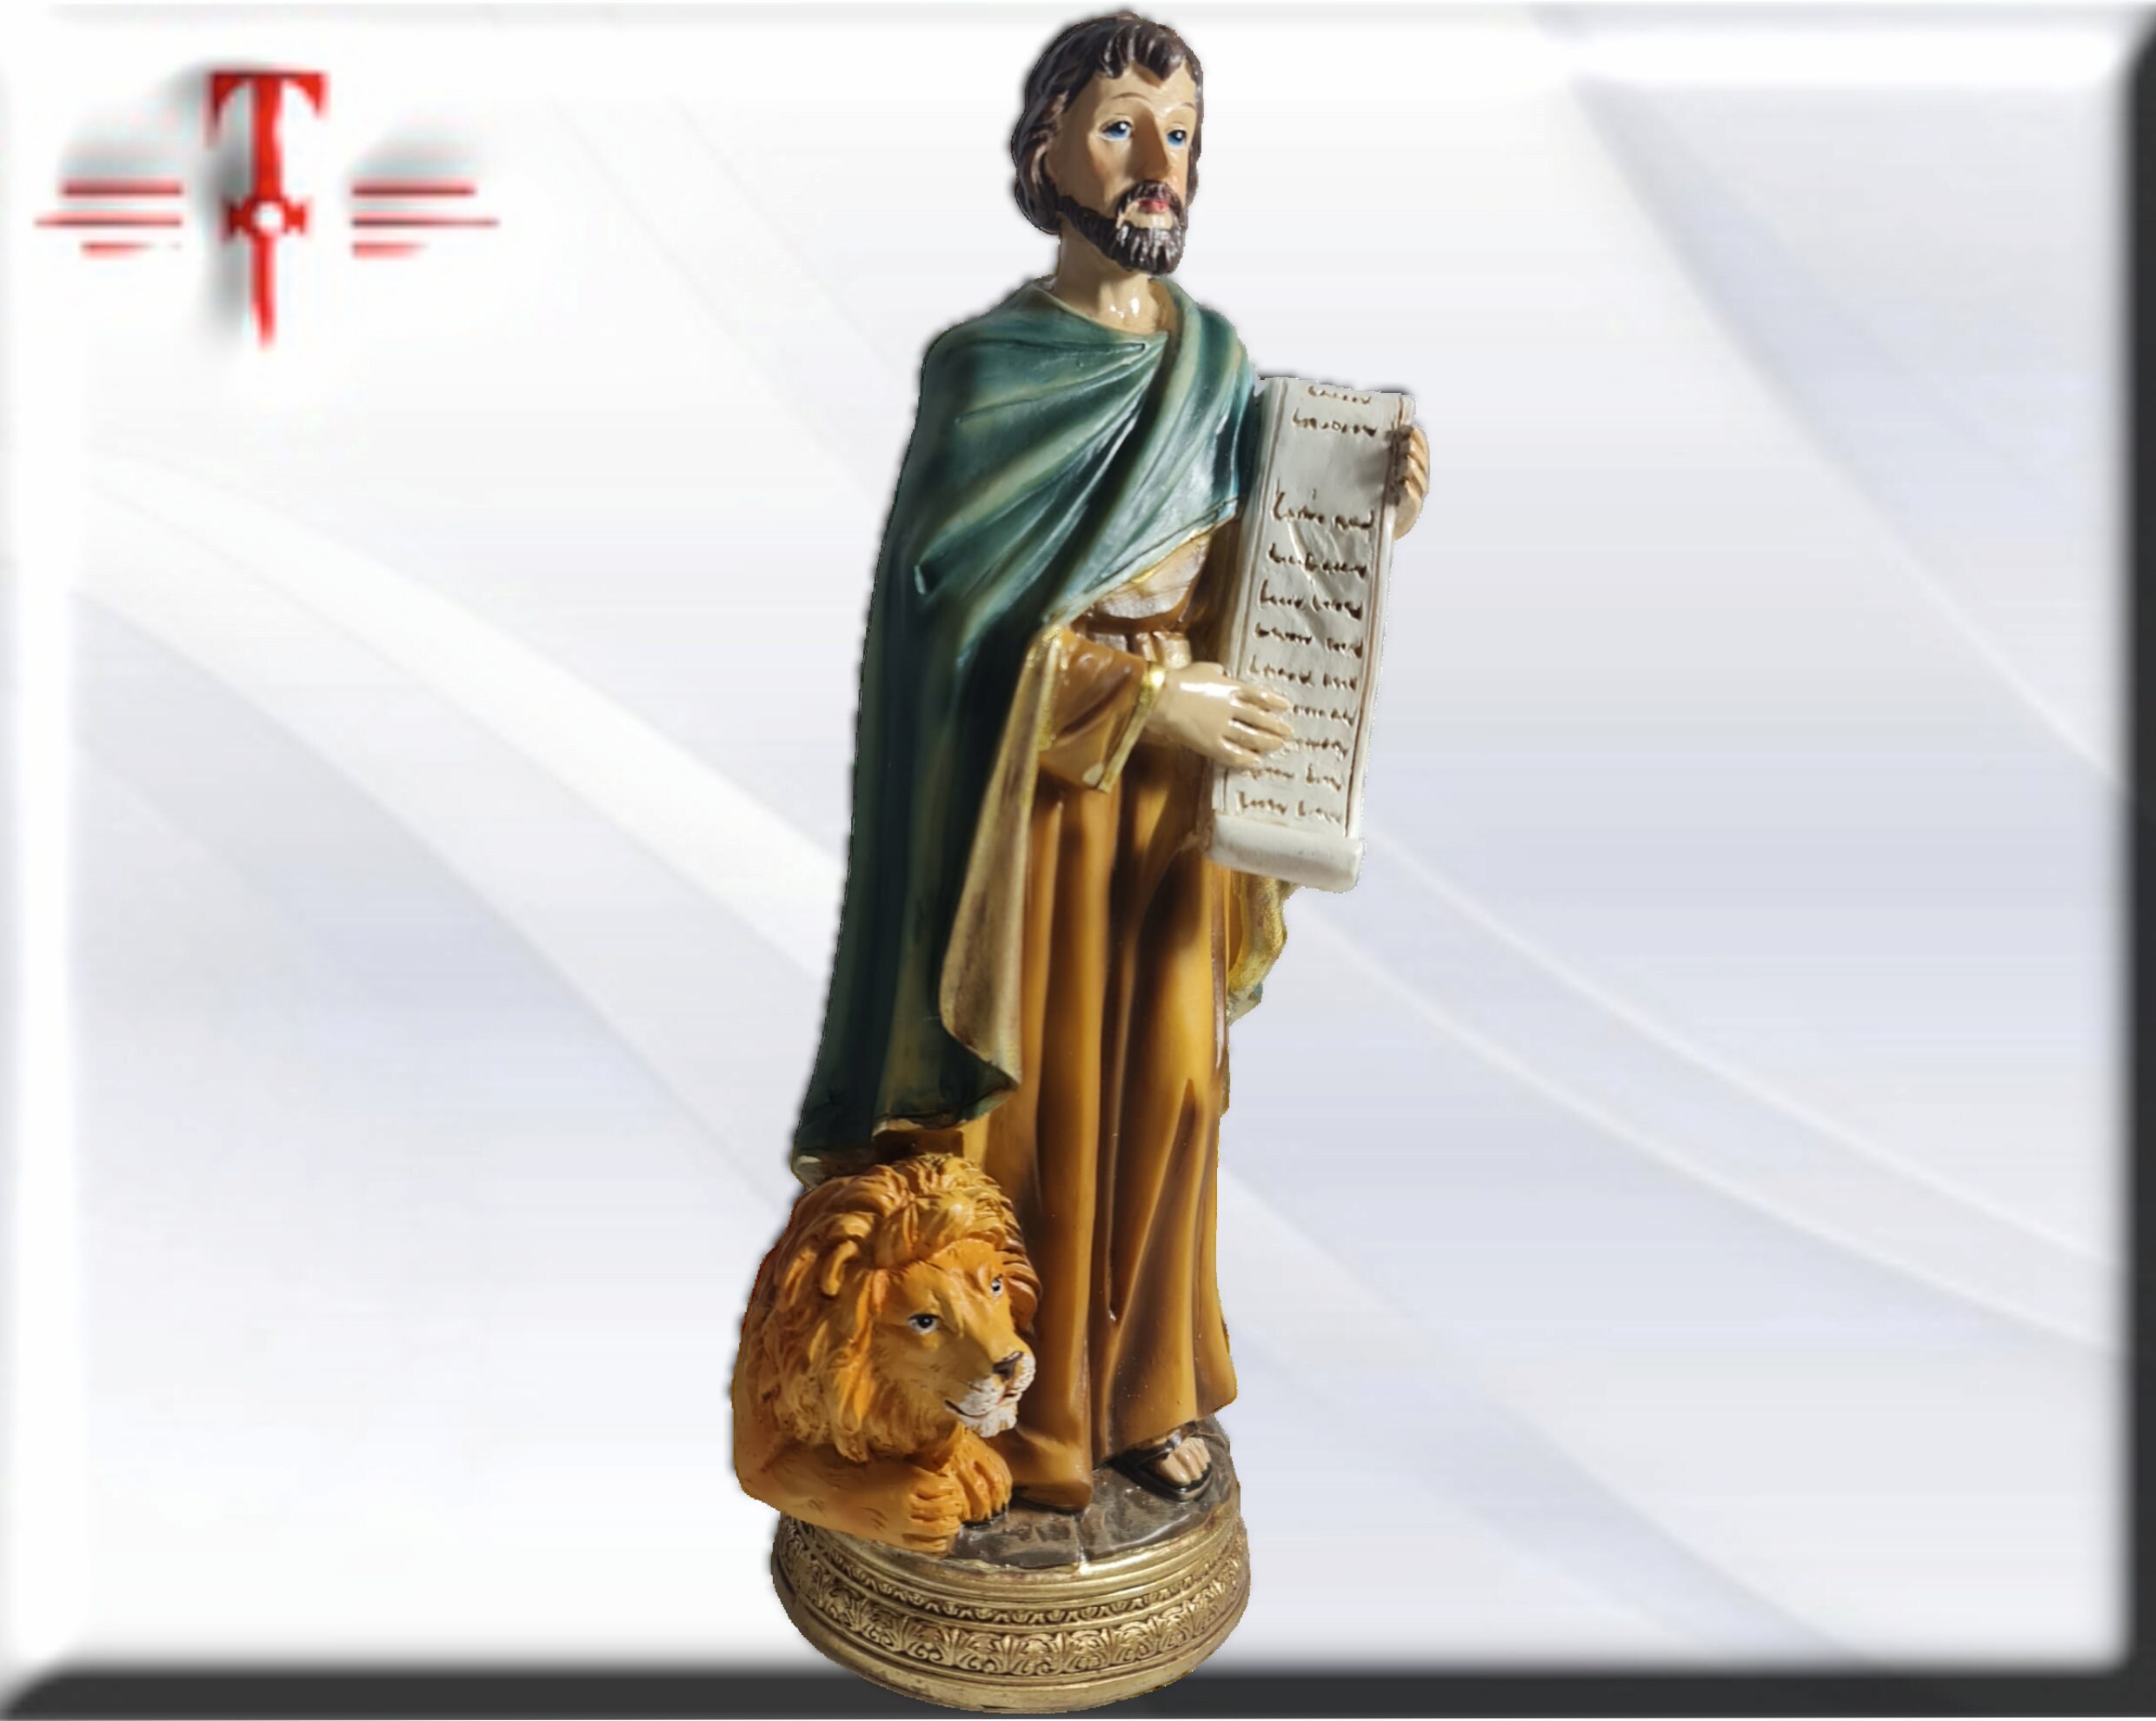 Saint Marc Évangéliste 30 cm statue en résine